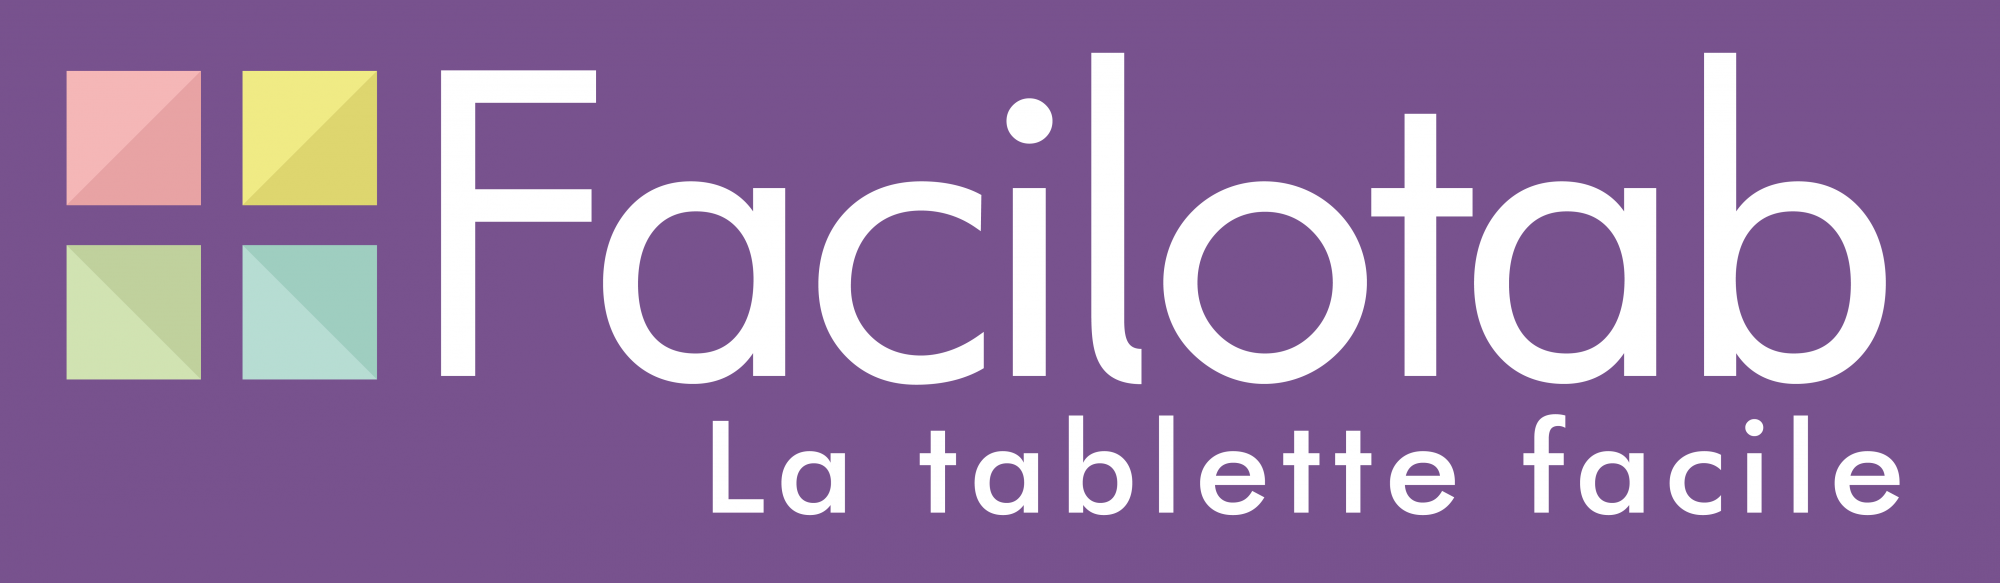 Formation tablette ou téléphone tactile (Android ou IOS) Marseille, la  Ciotat, Aubagne, Cassis, Aix en Provence et alentours…. - Celinform@tique -  A DOMICILE !